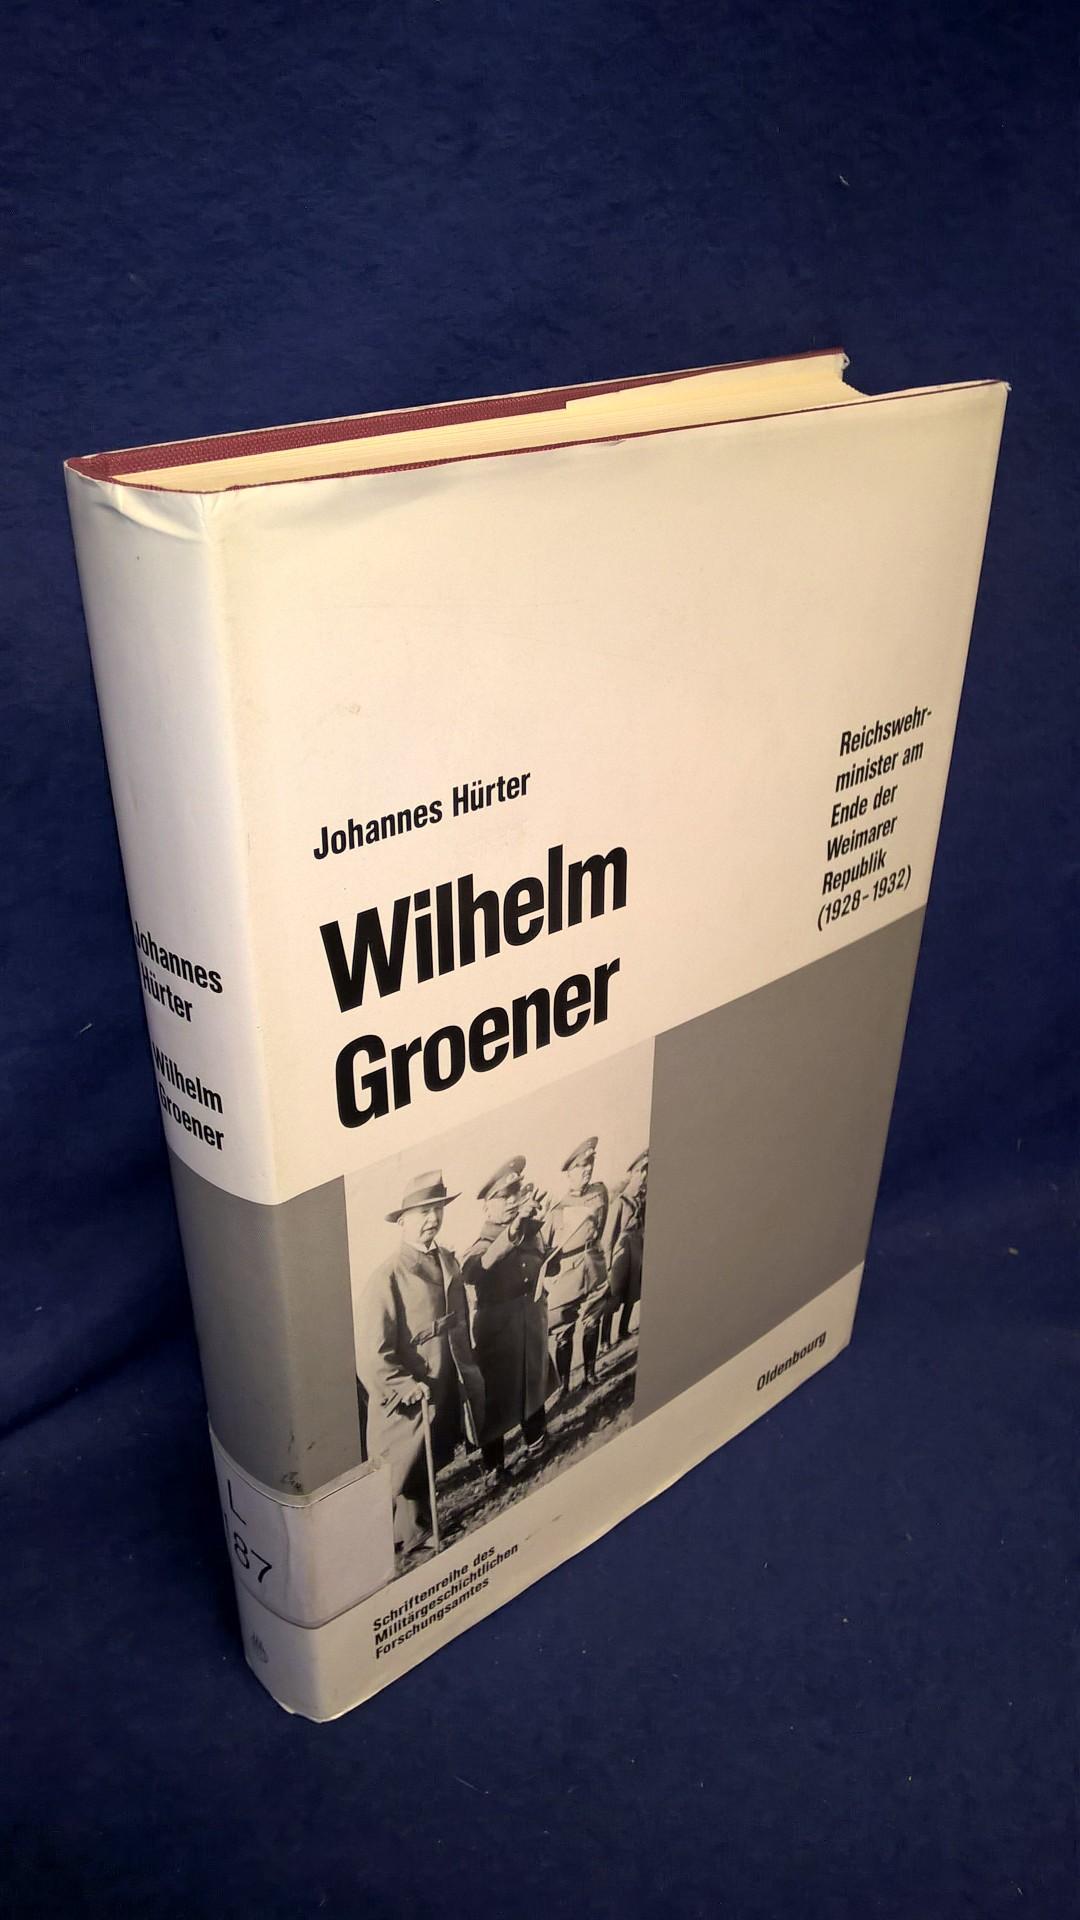 Beiträge zur Militärgeschichte - Band 39: Wilhelm Groener. Reichswehrminister am Ende der Weimarer Republik (1928-1932)